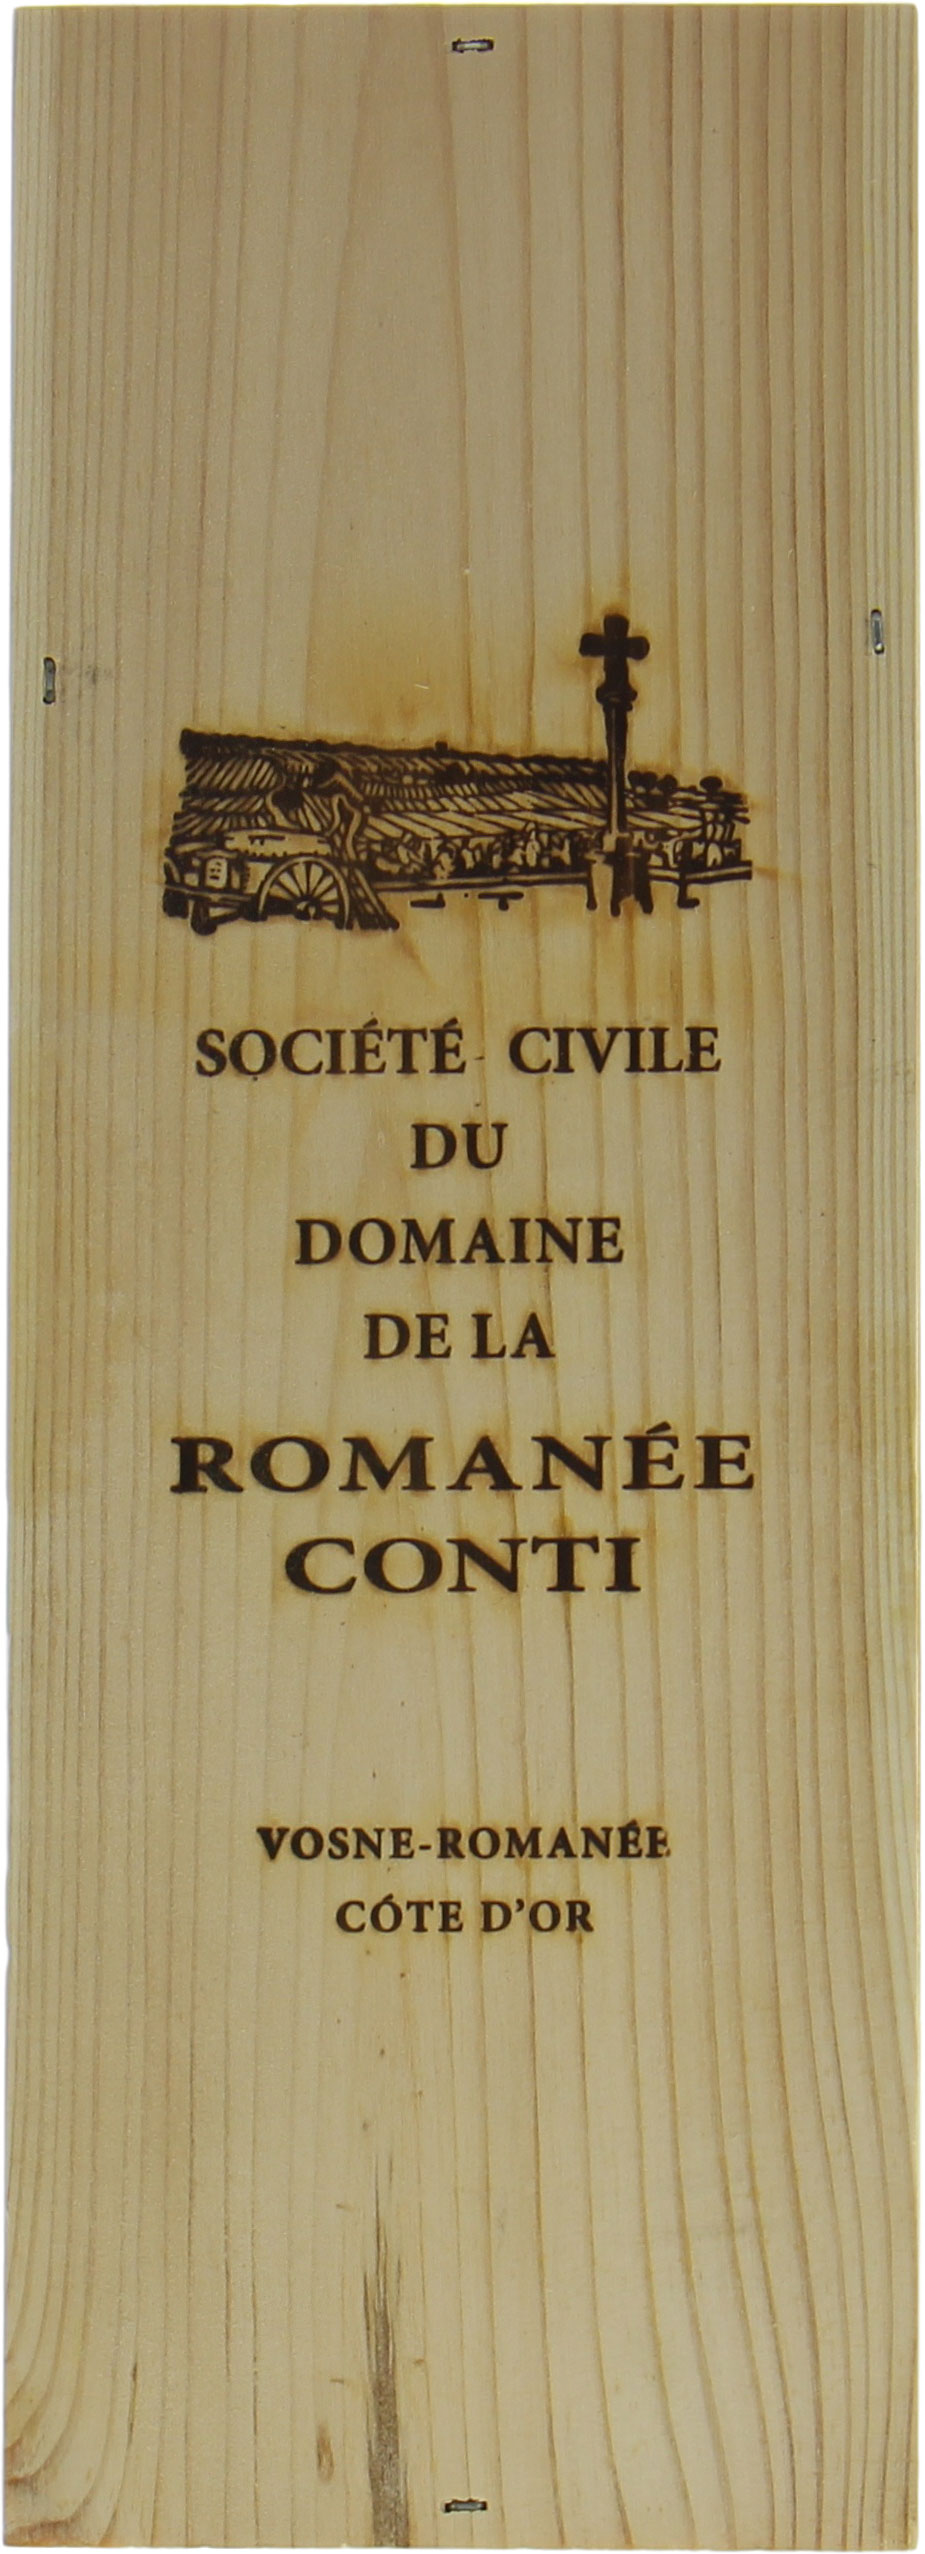 Domaine de la Romanee Conti - Corton 2015